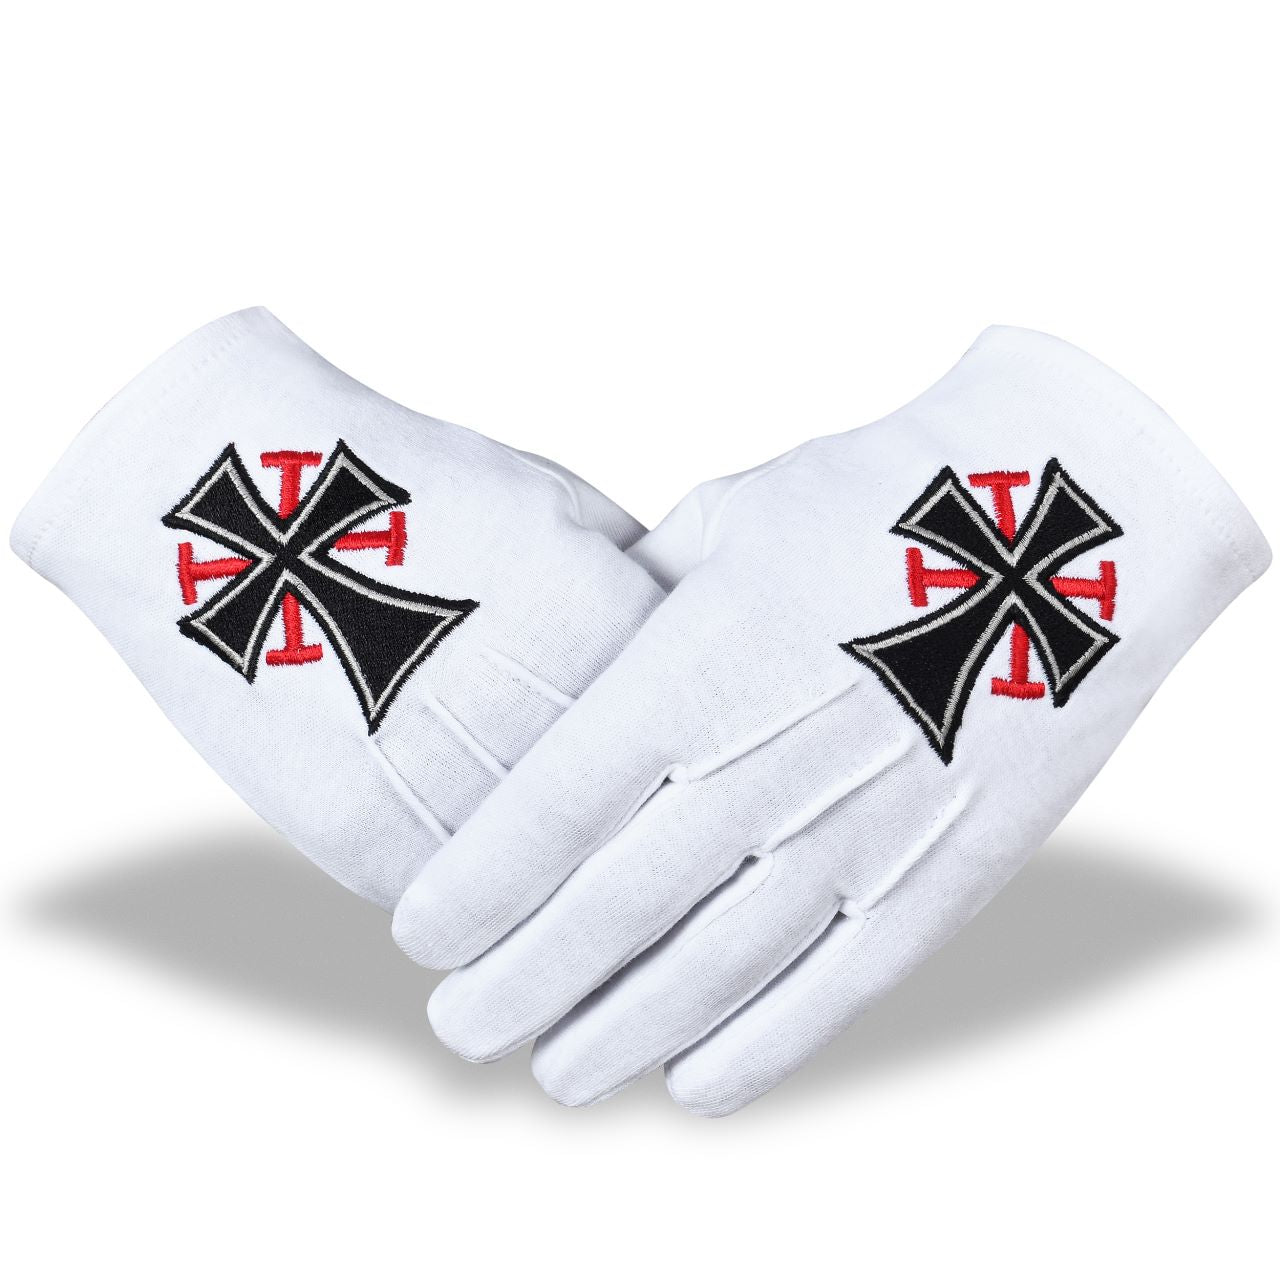 Knights Templar Commandery Gloves - Black Cross - Bricks Masons